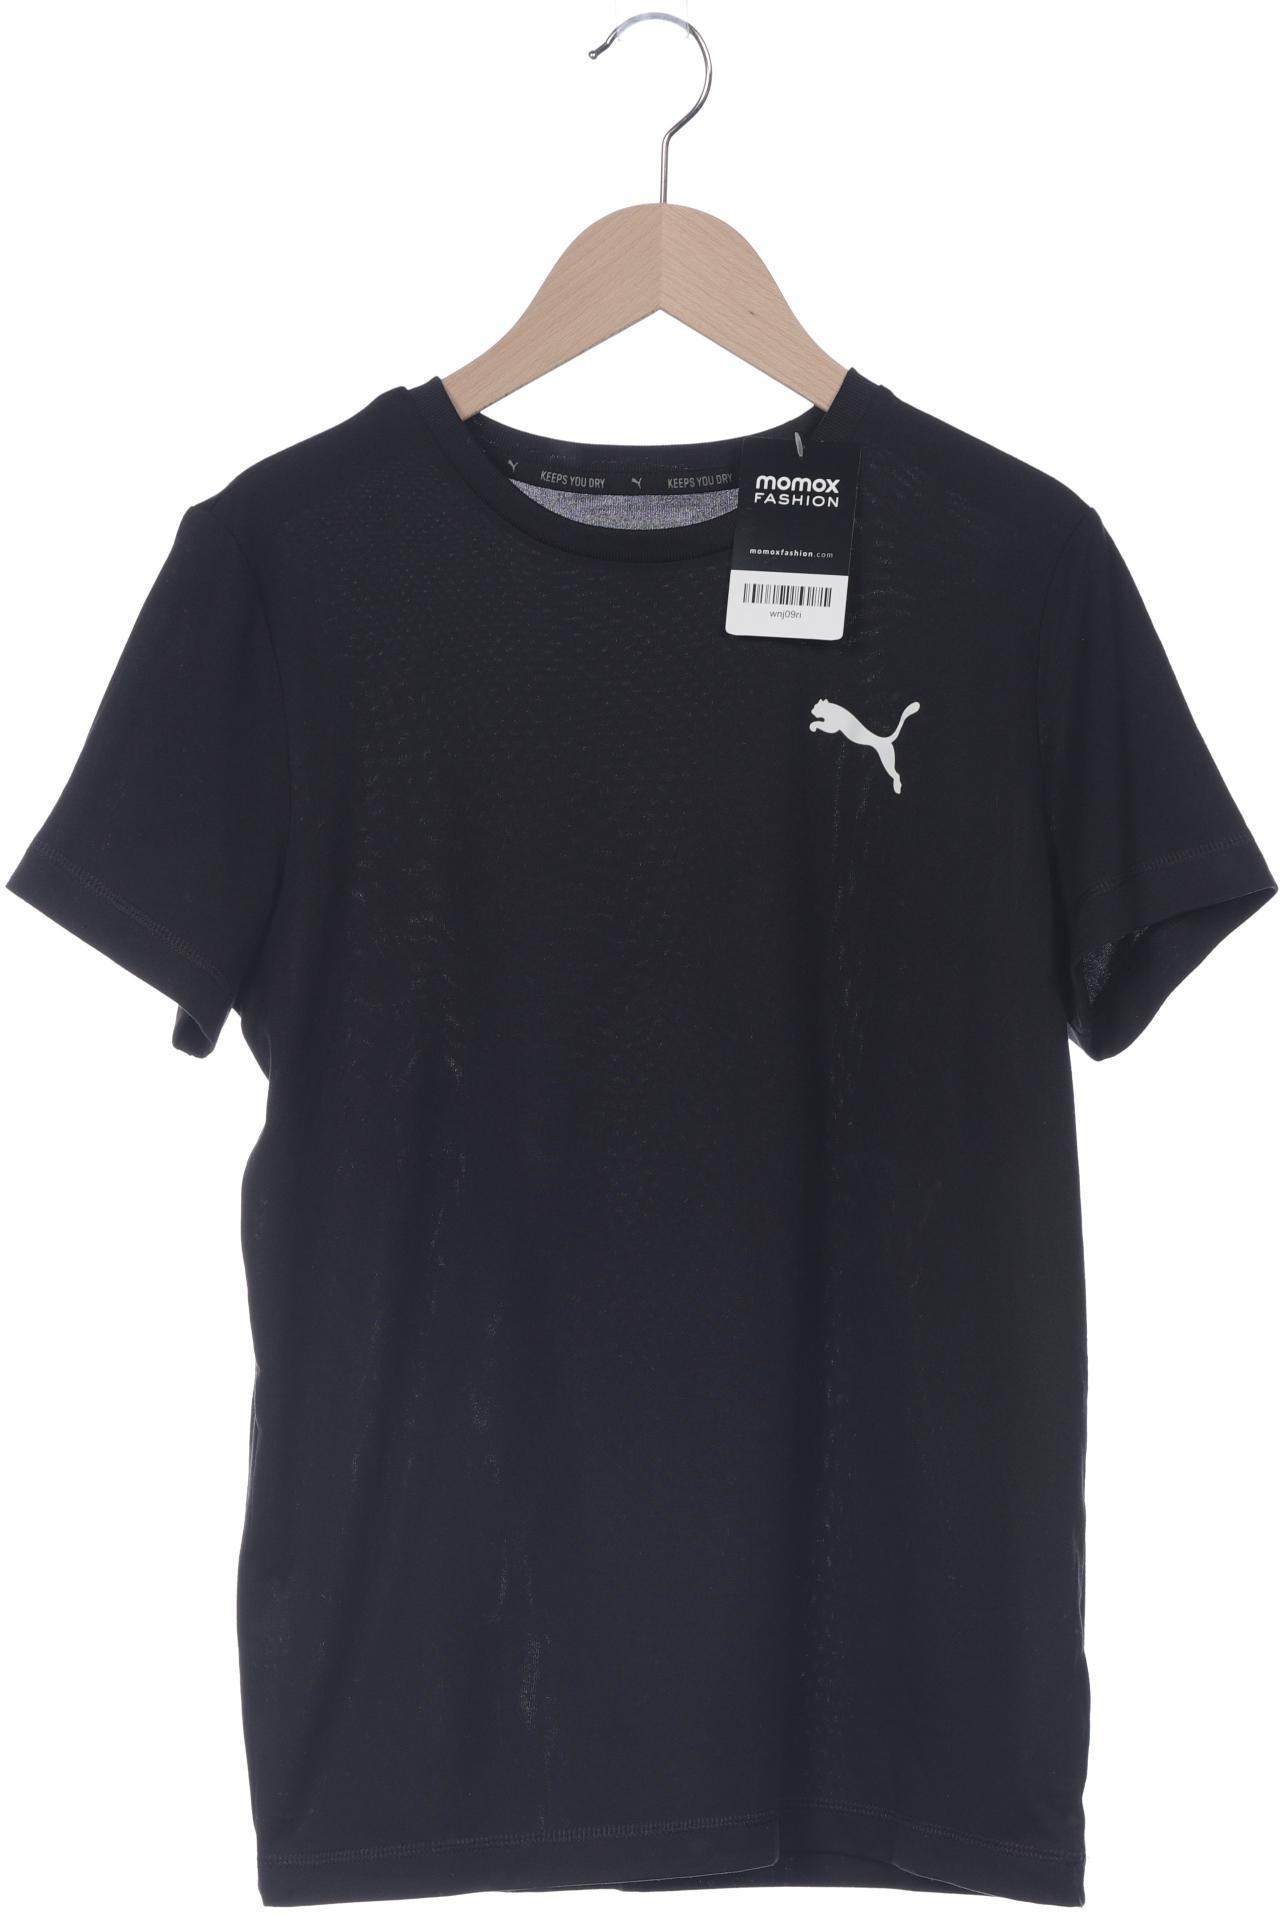 PUMA Jungen T-Shirt, schwarz von Puma